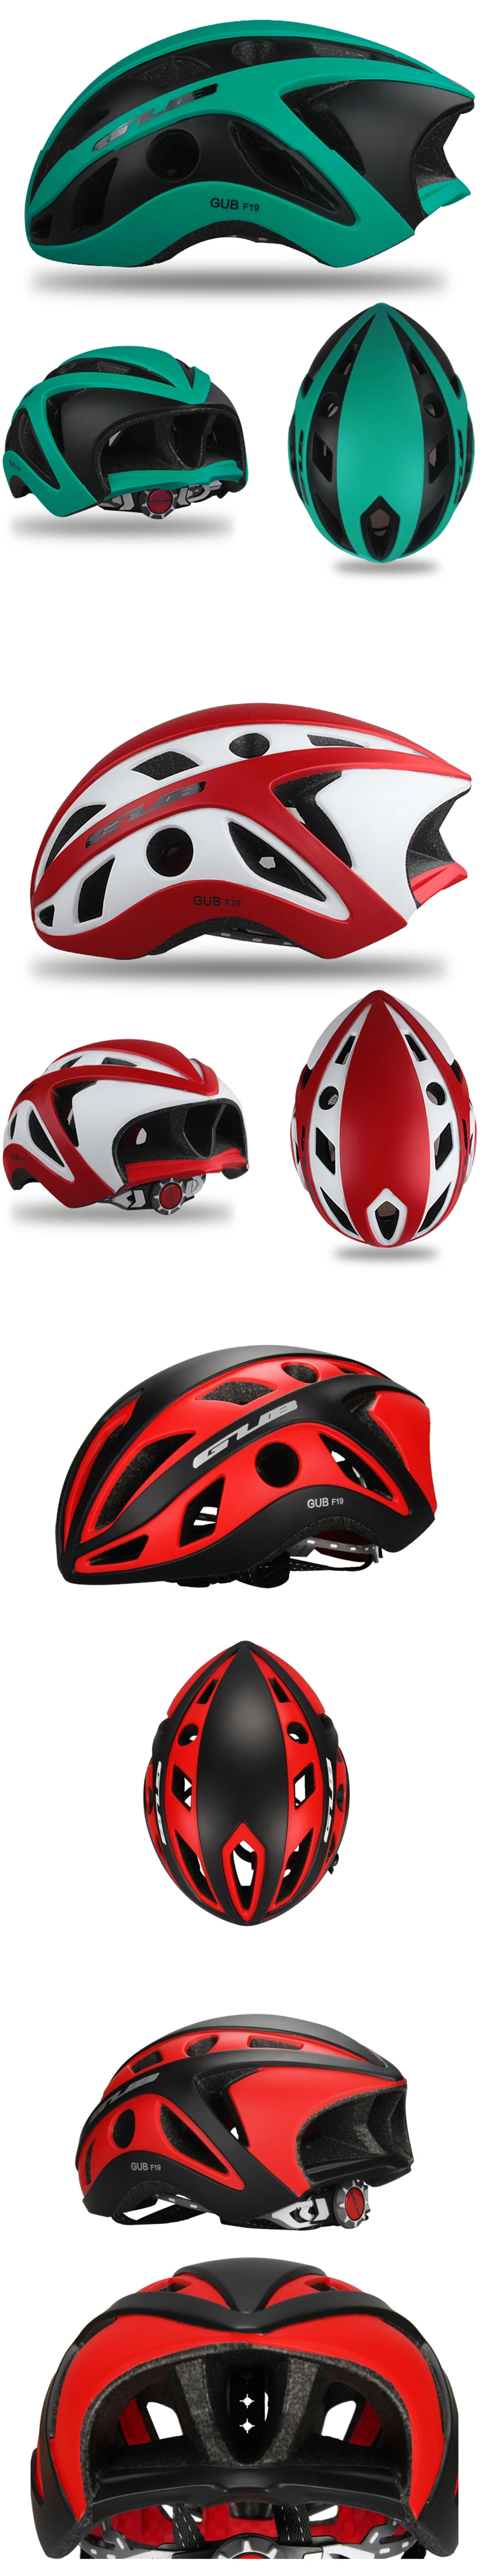 GUB велосипедный шлем MTB горный велосипед шлем дорожный велосипед Интегрированный формирующий шлем для езды для мужчин и женщин ветрозащитные шлемы